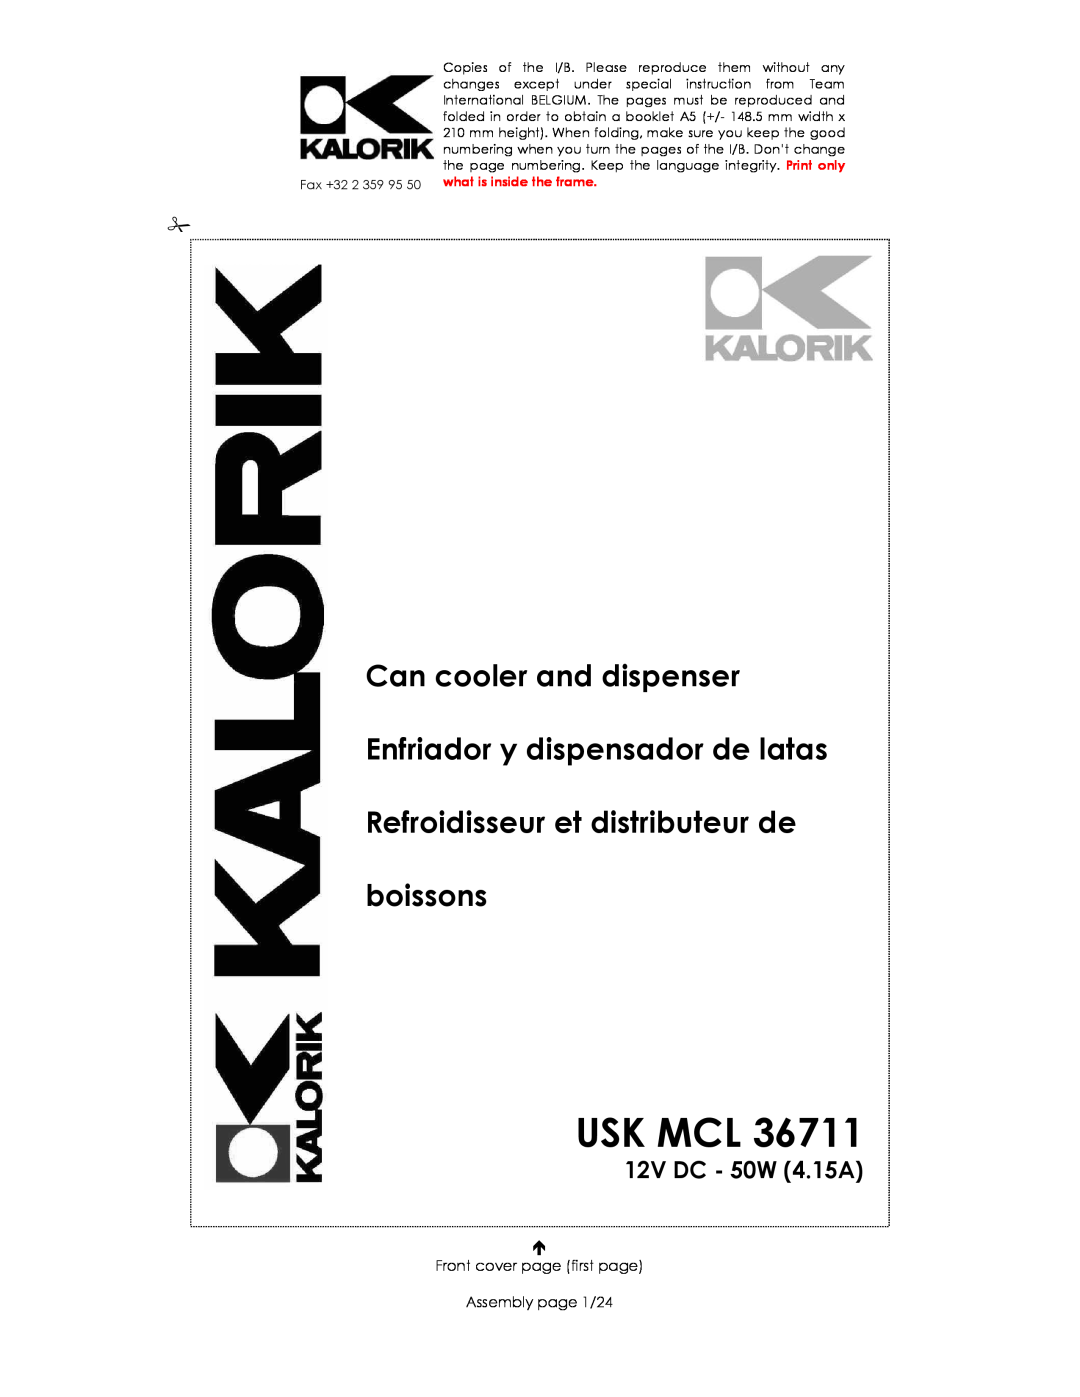 Kalorik USK MCL 36711 manual Usk Mcl, Can cooler and dispenser Enfriador y dispensador de latas, 12V DC - 50W 4.15A 